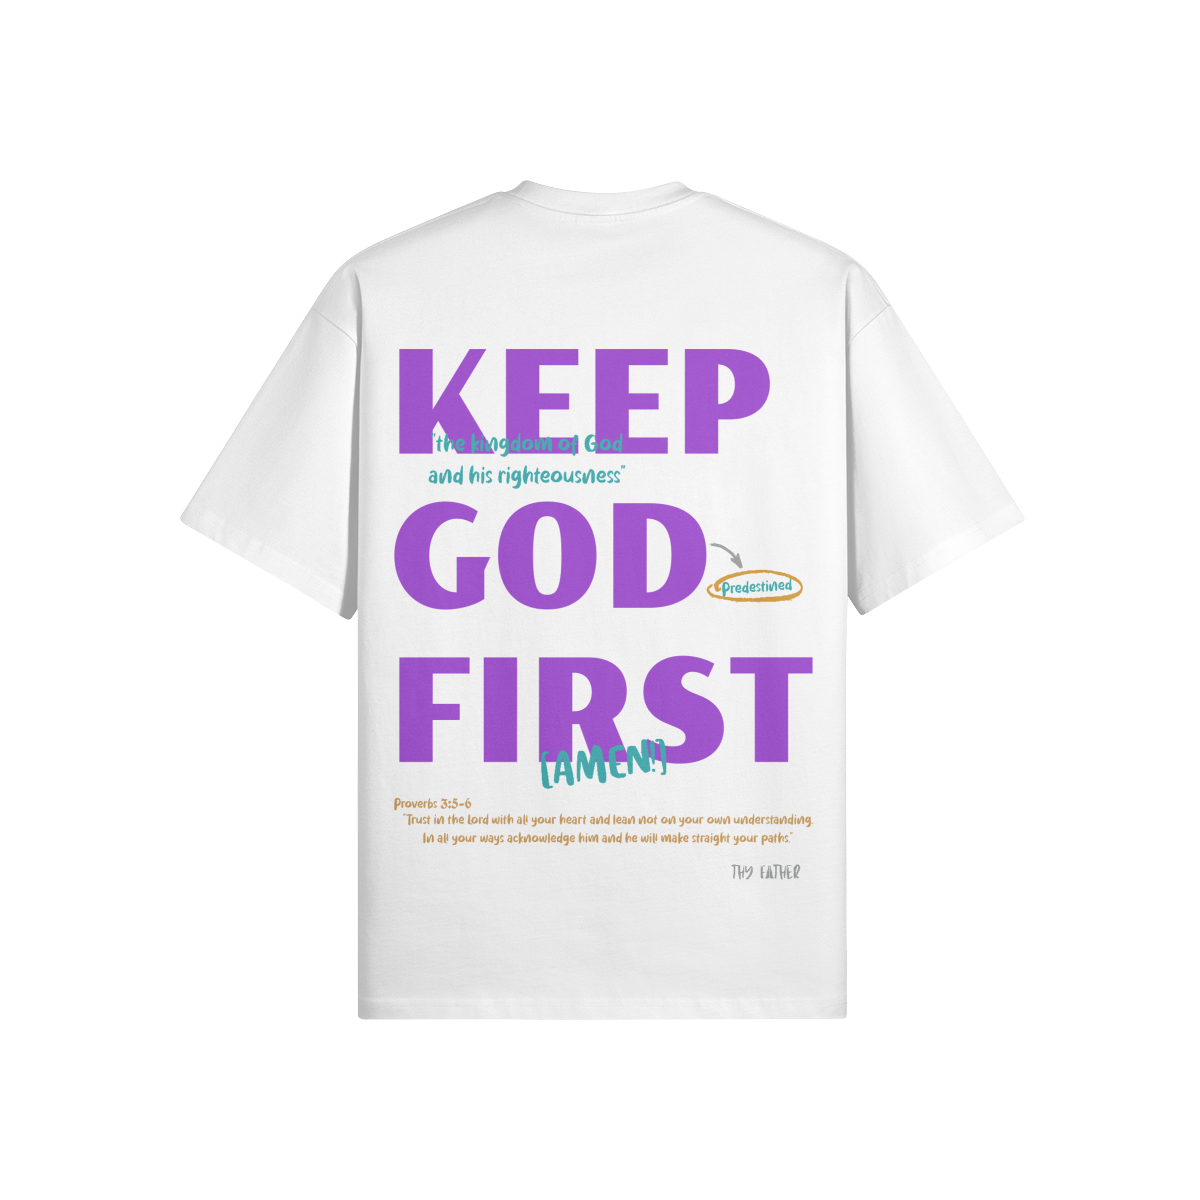 Keep God First